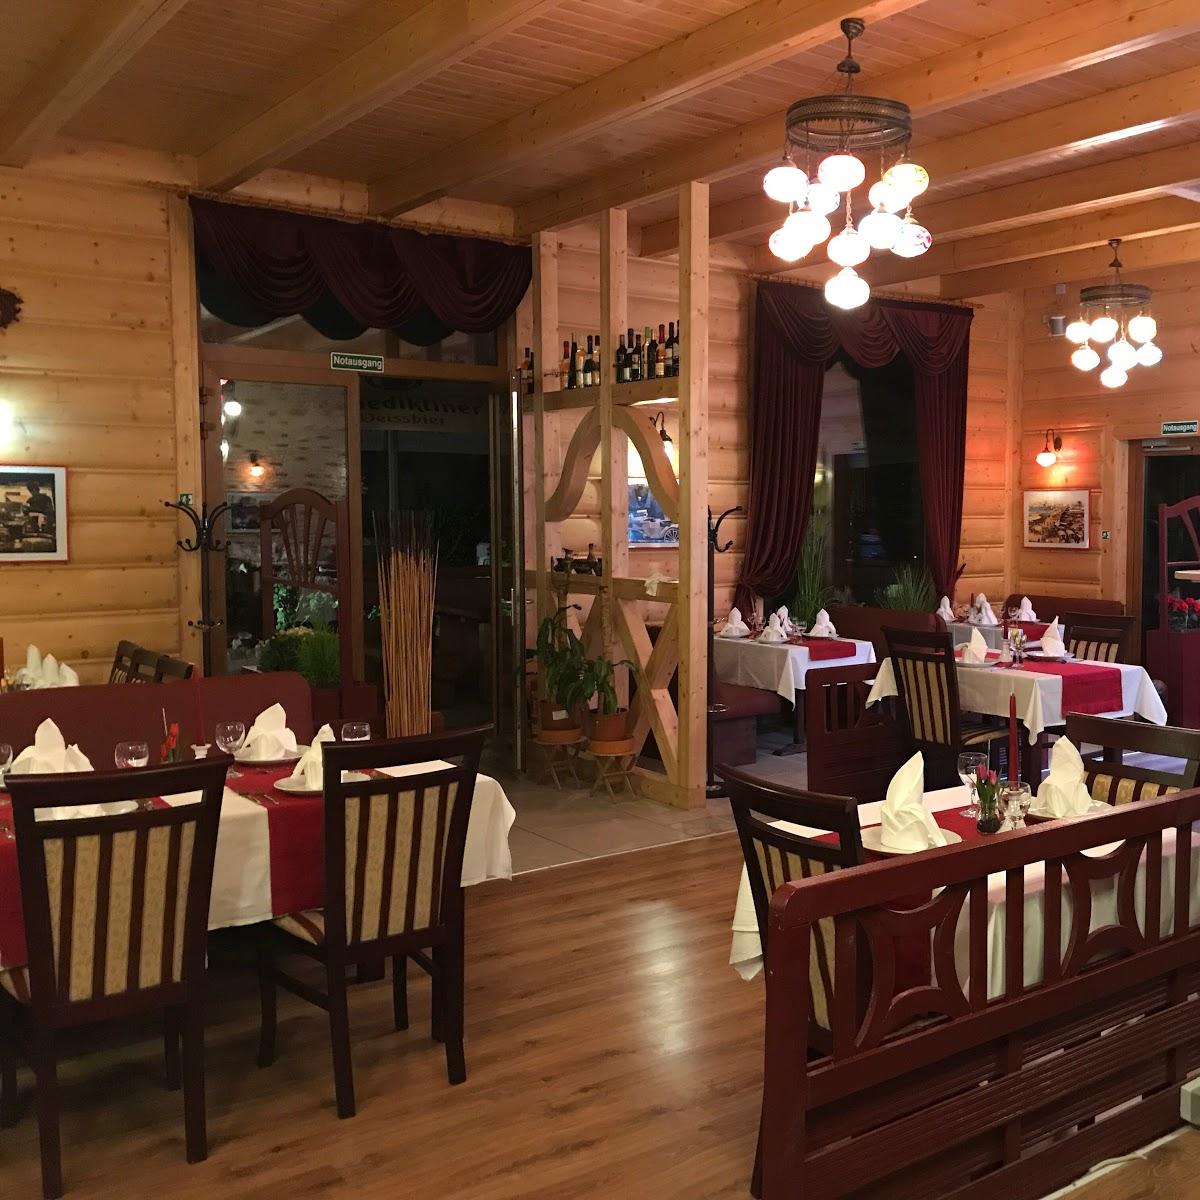 Restaurant "Anadolu Der Diwan Restaurant" in Gera